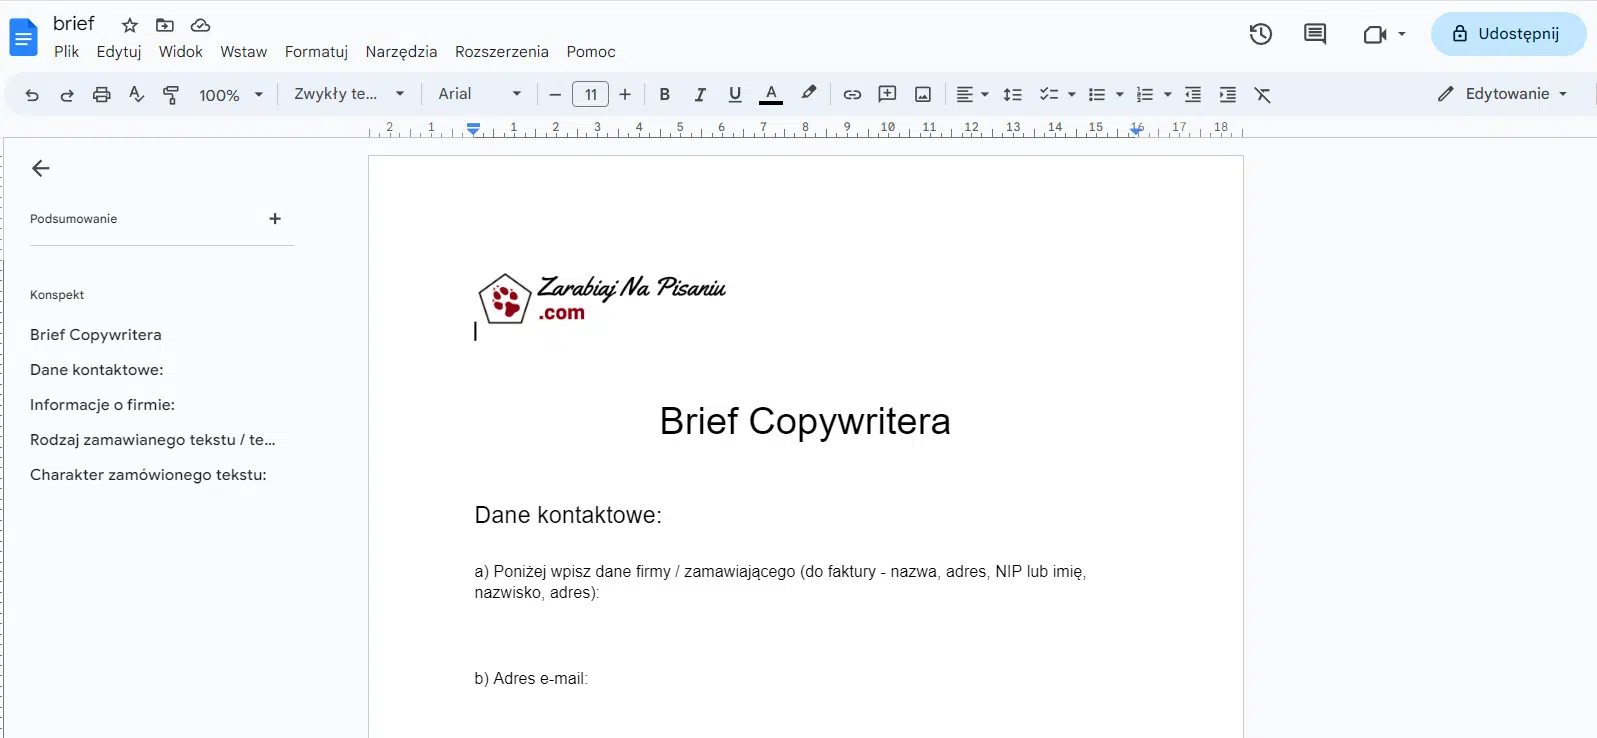 Obraz przedstawiający brief dla copywritera.